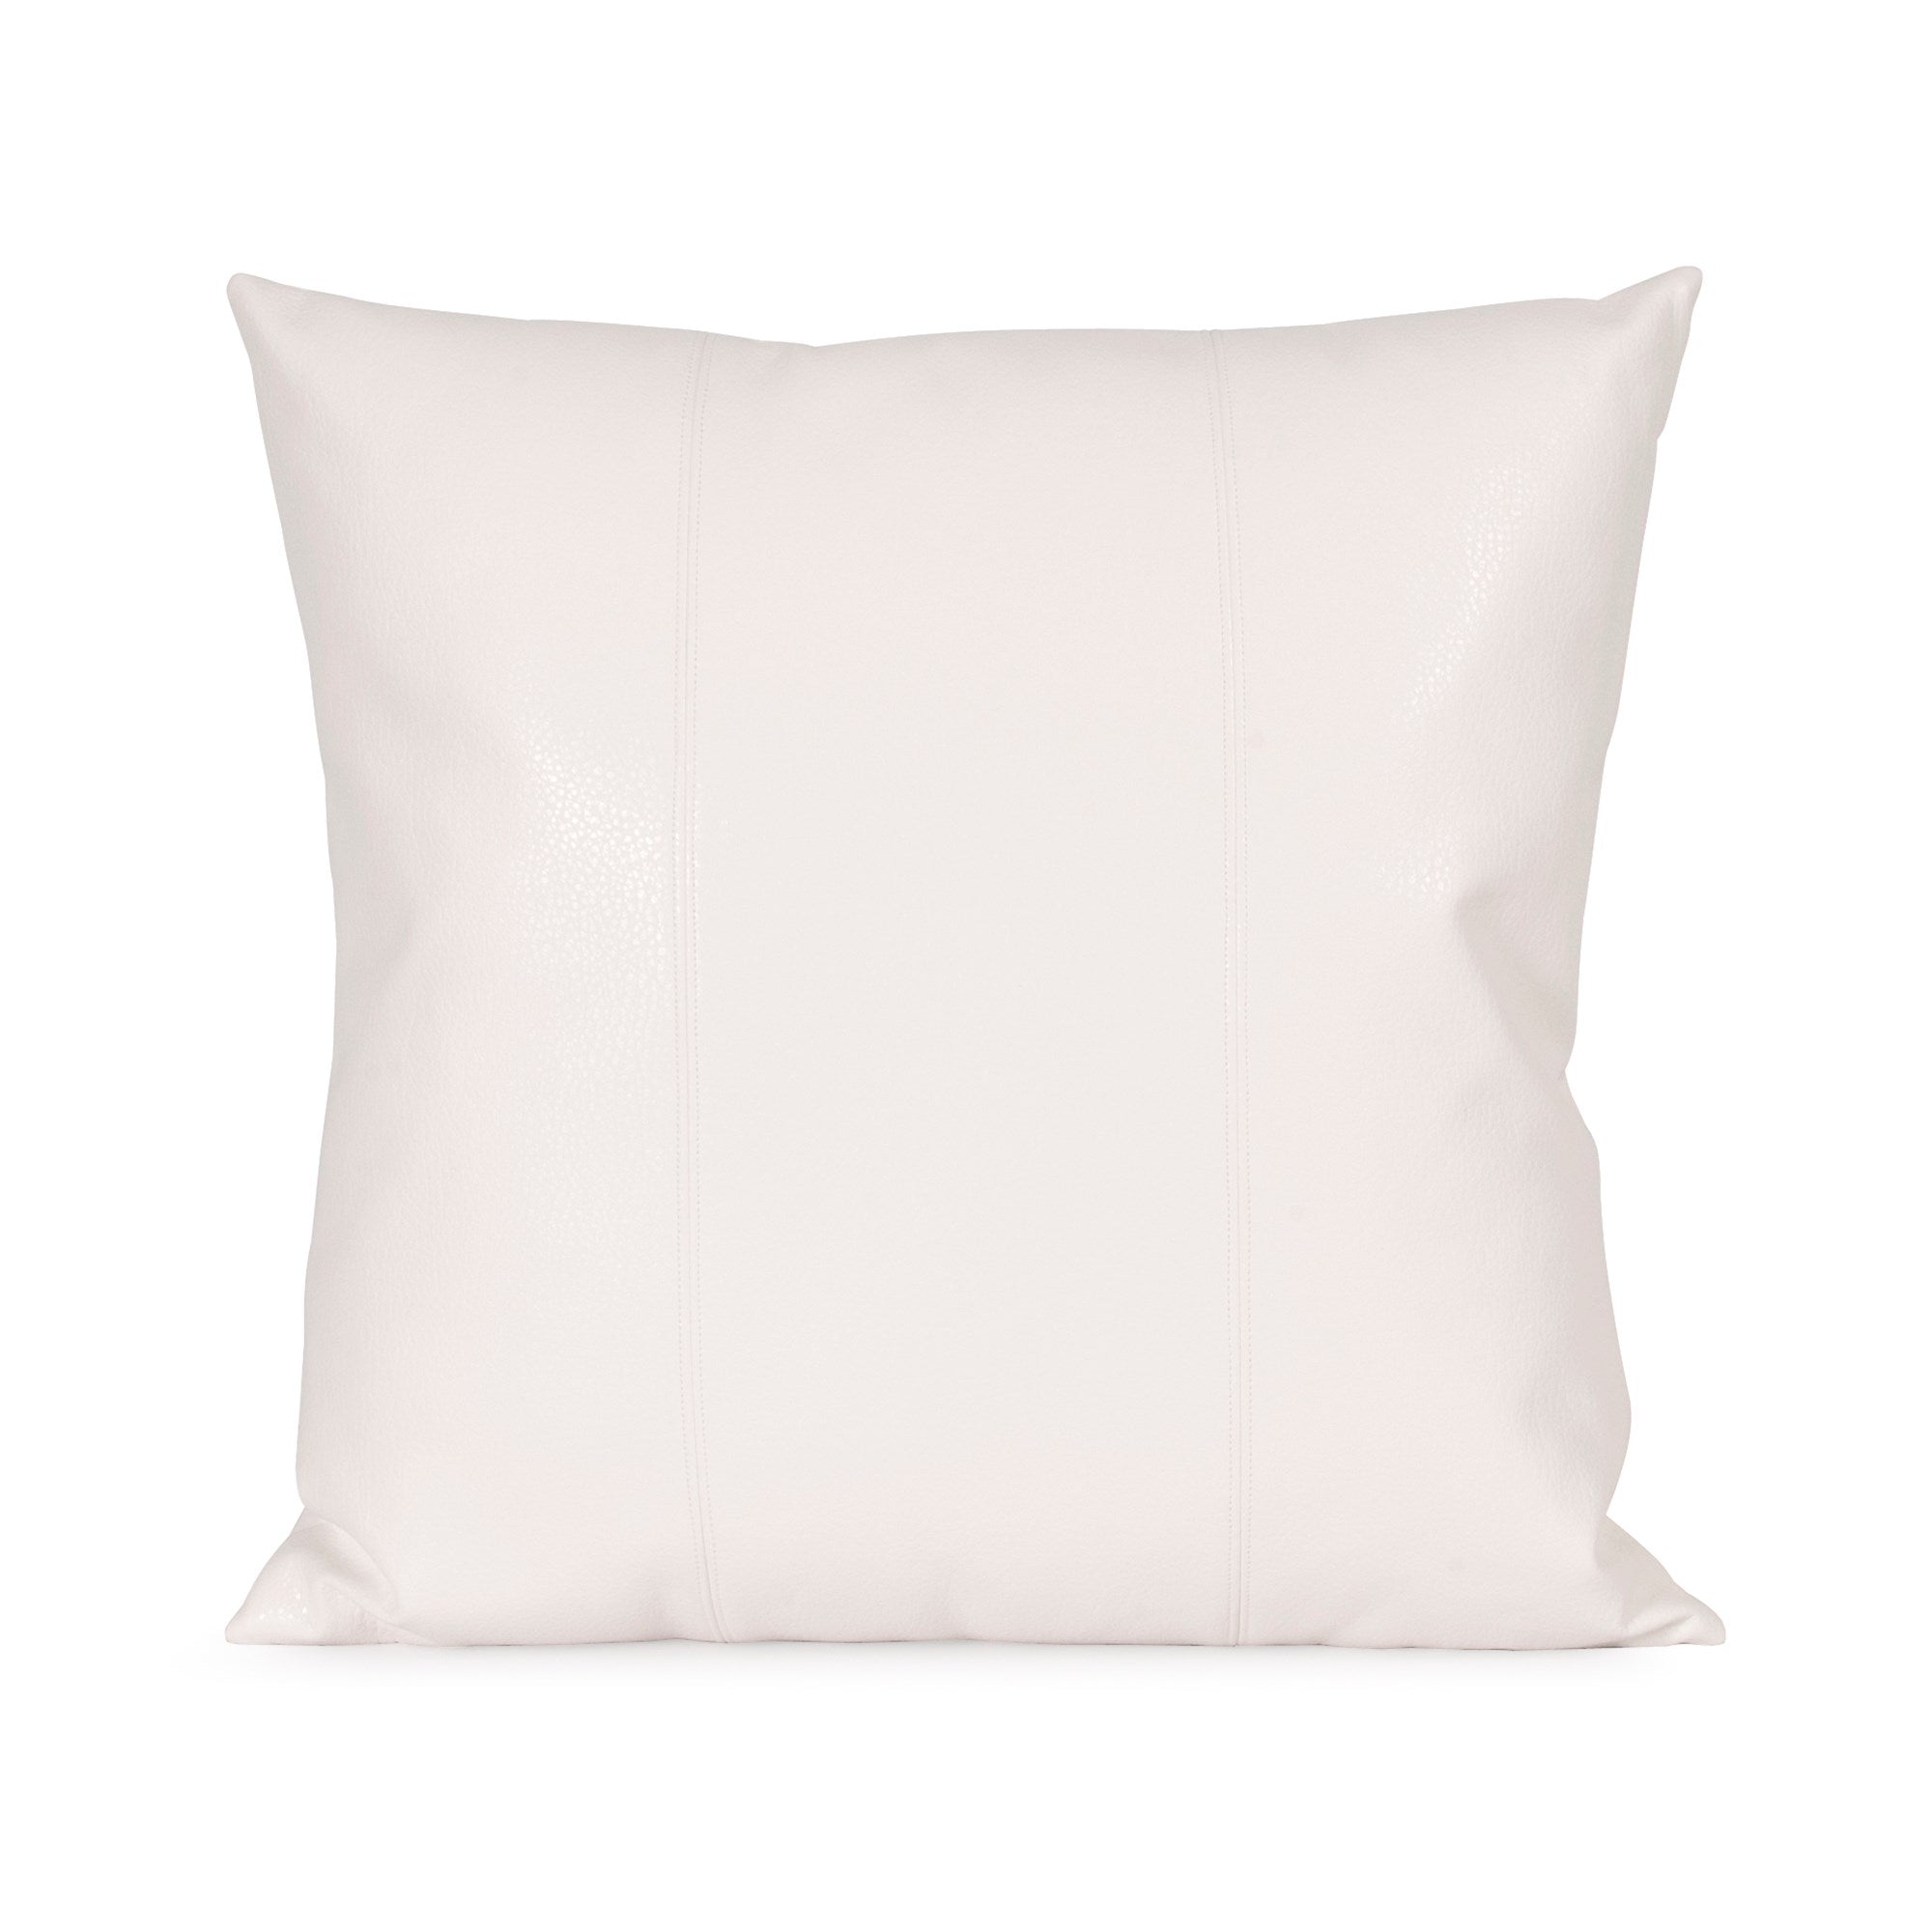 Avanti White Poly Pillow- 20" x 20"